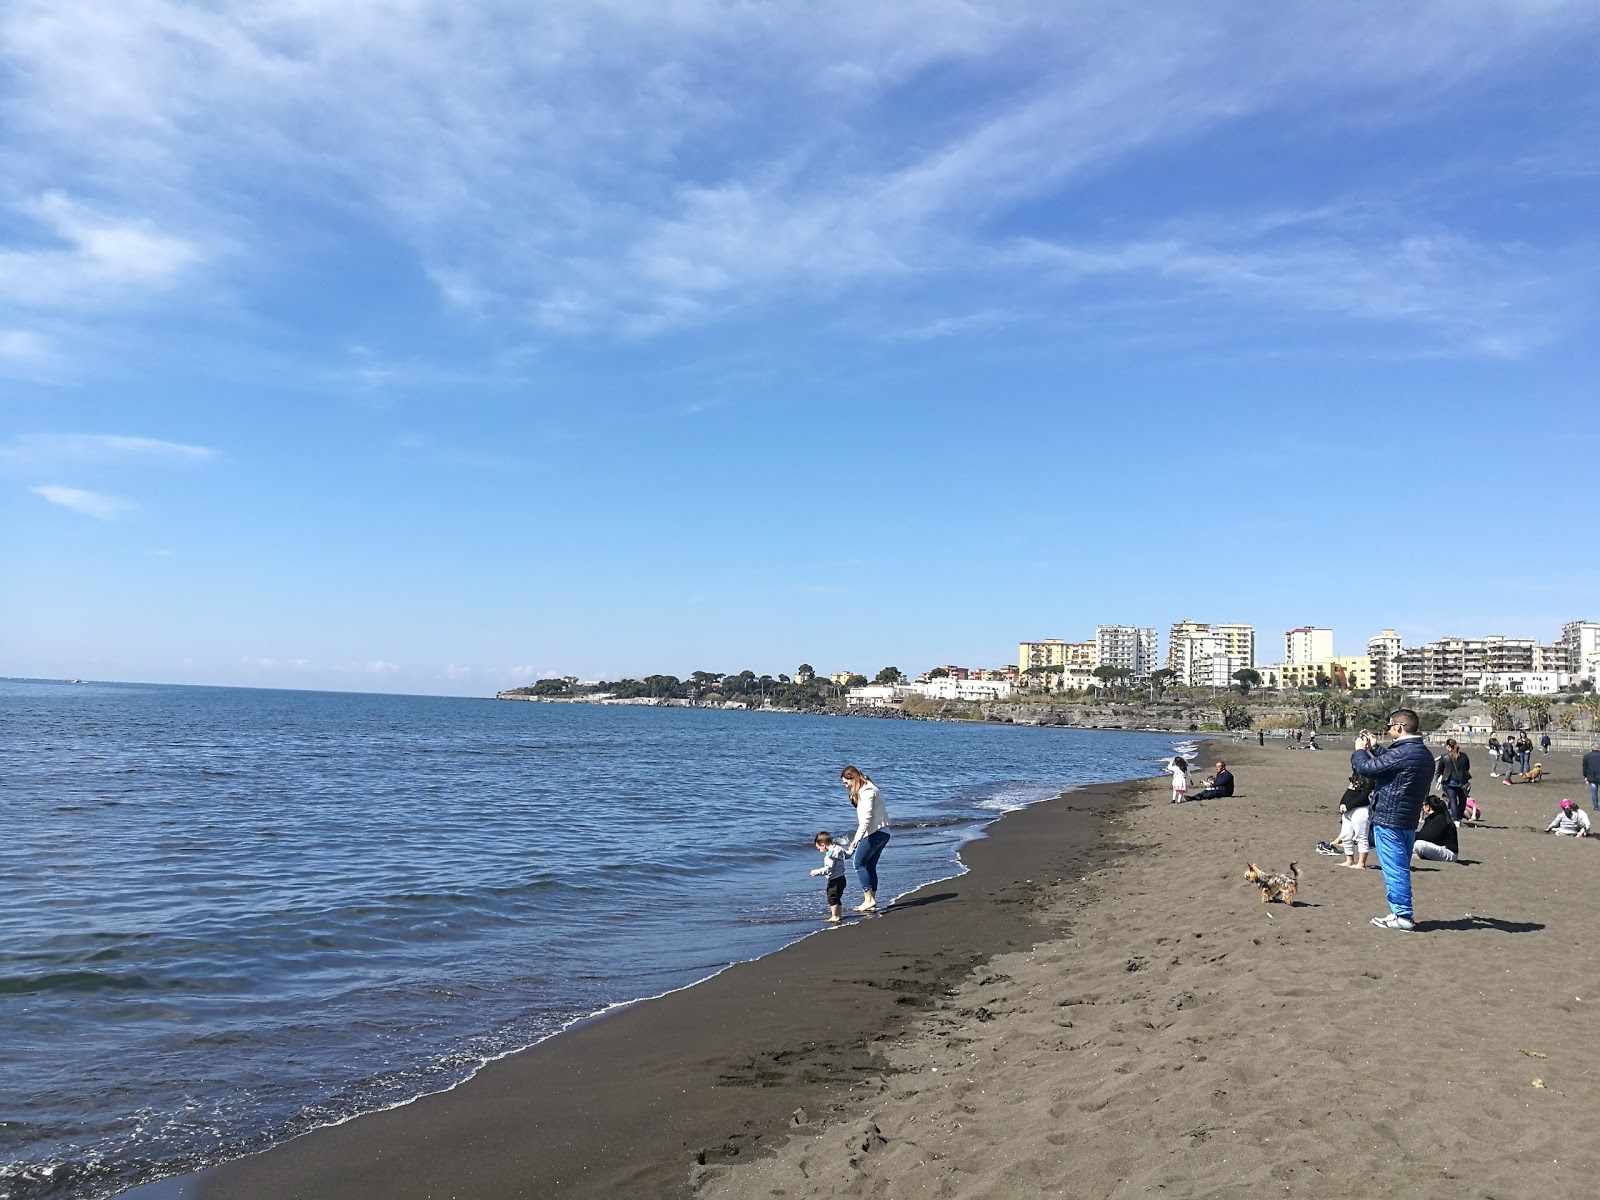 Zdjęcie Torre Annunziata beach - popularne miejsce wśród znawców relaksu